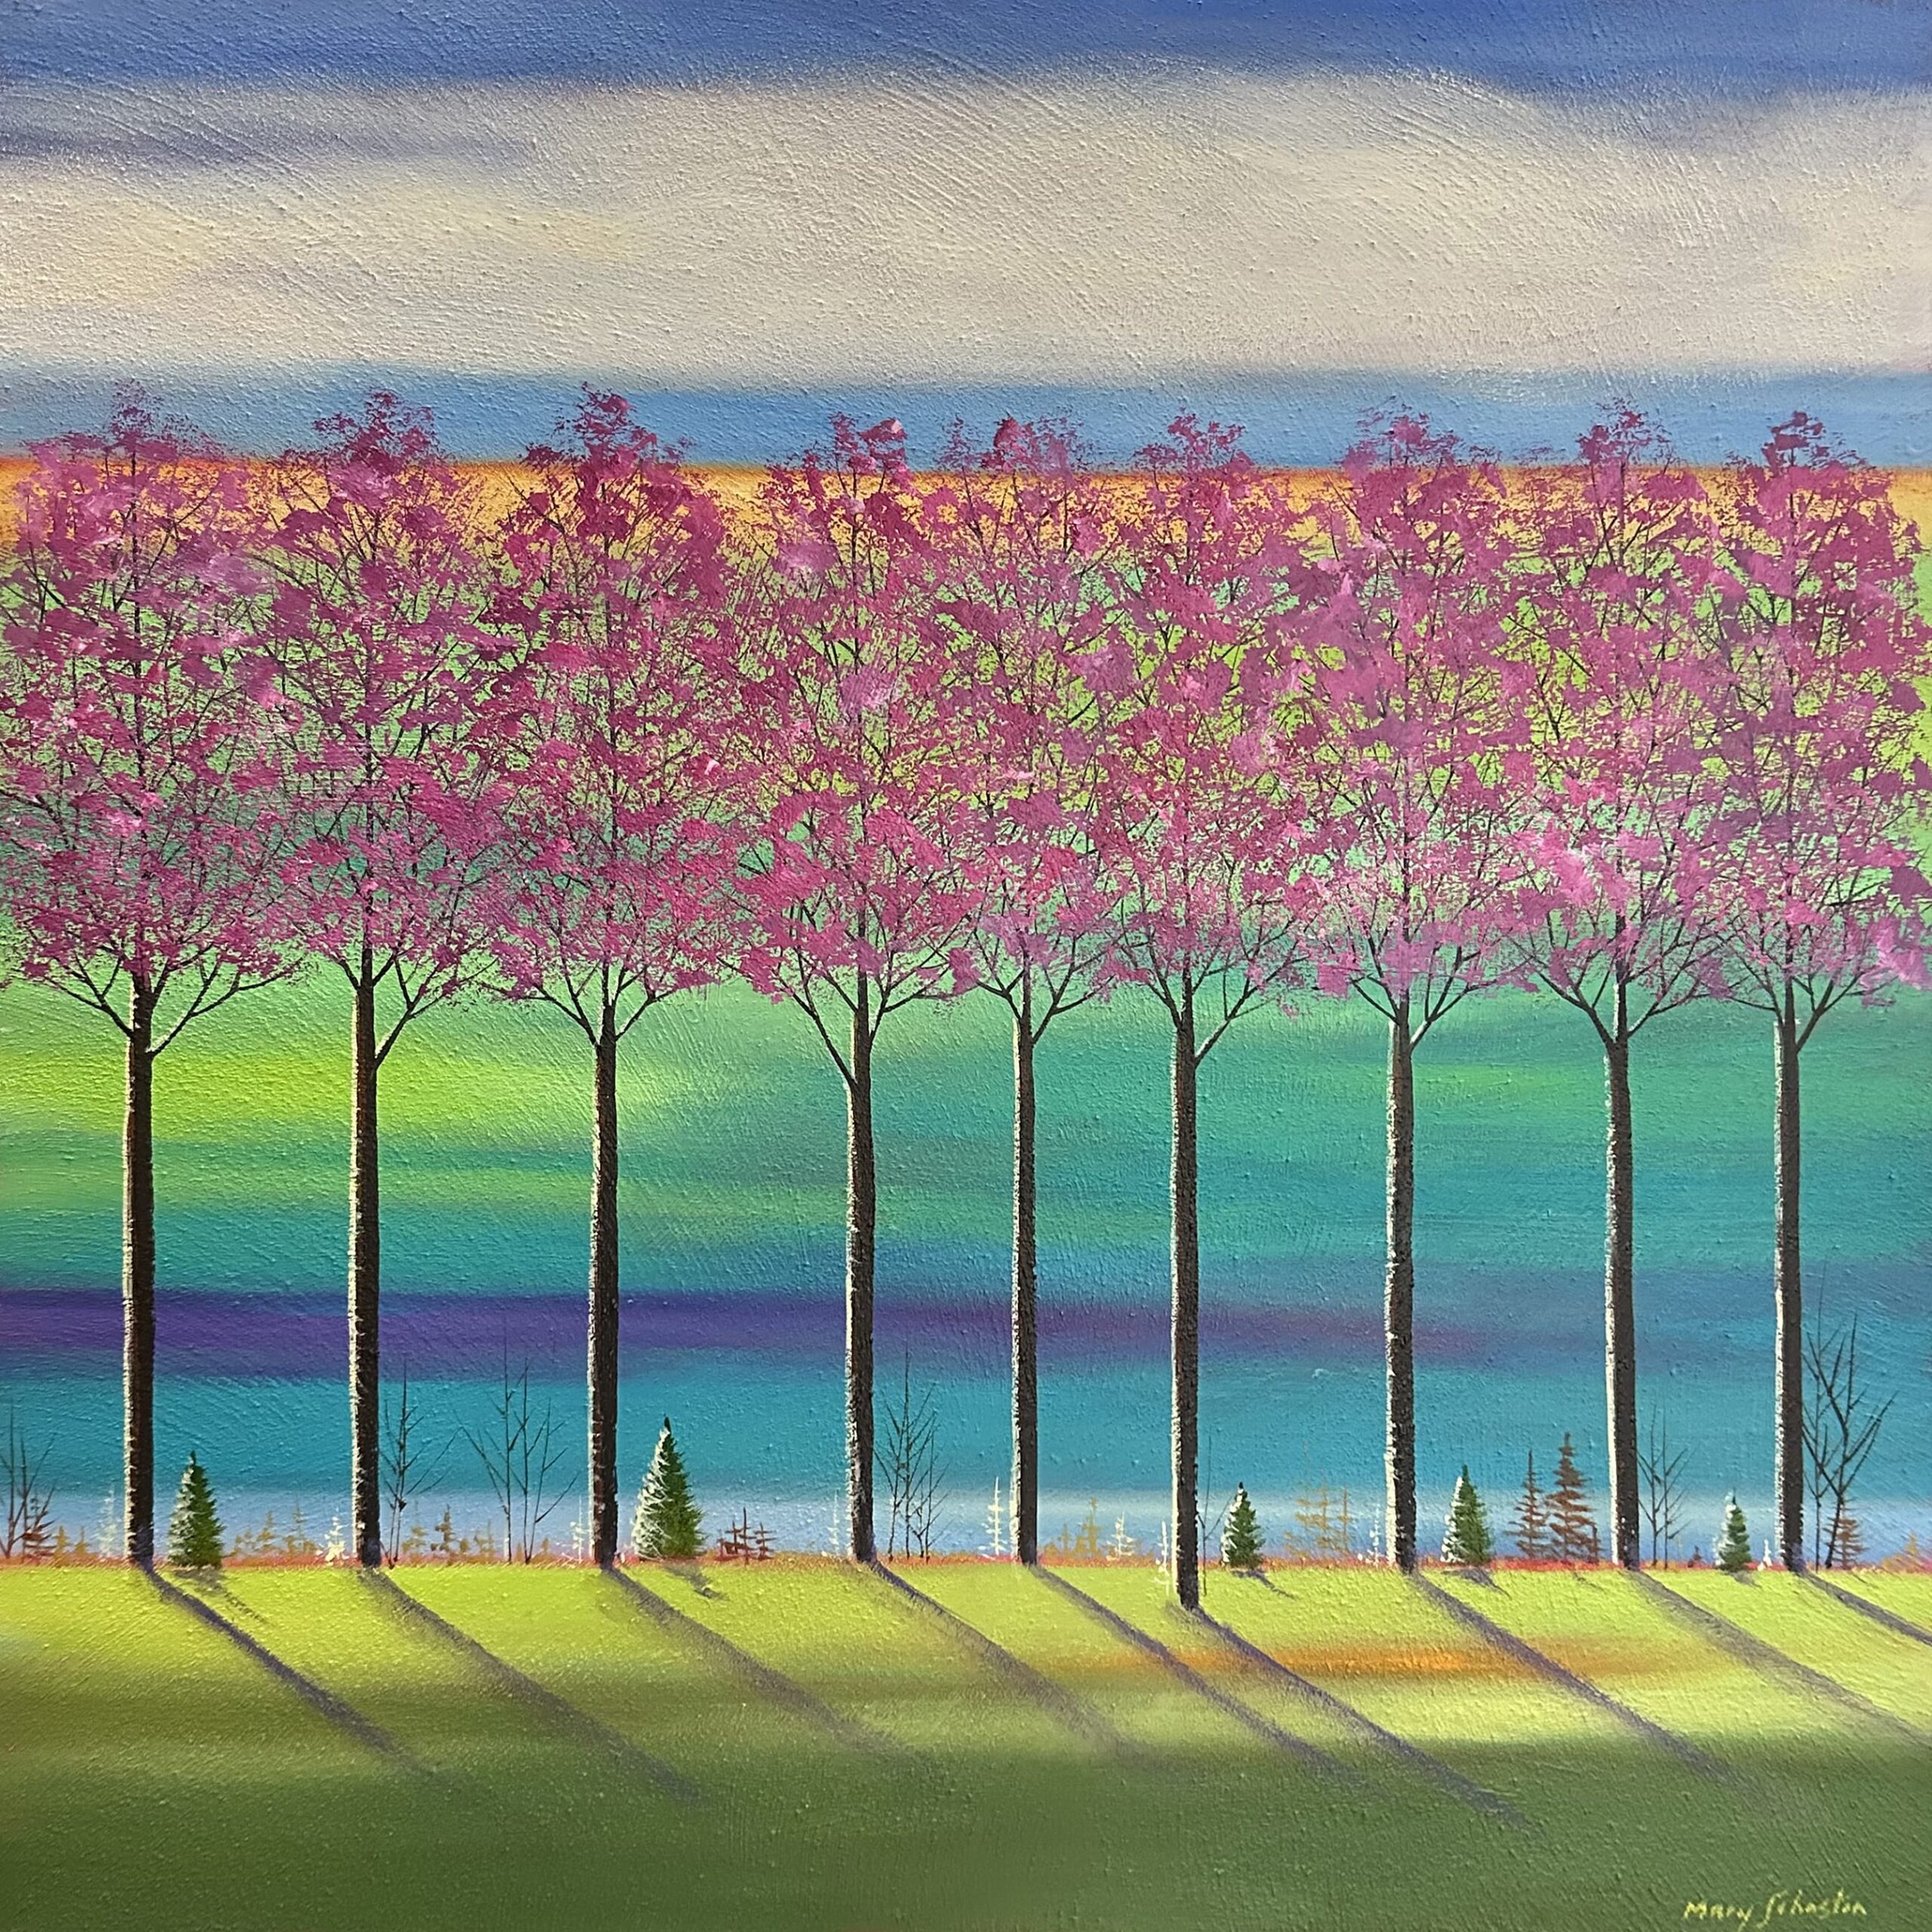 Tableau représentant un paysage aux arbres roses sur fond bleu et vert